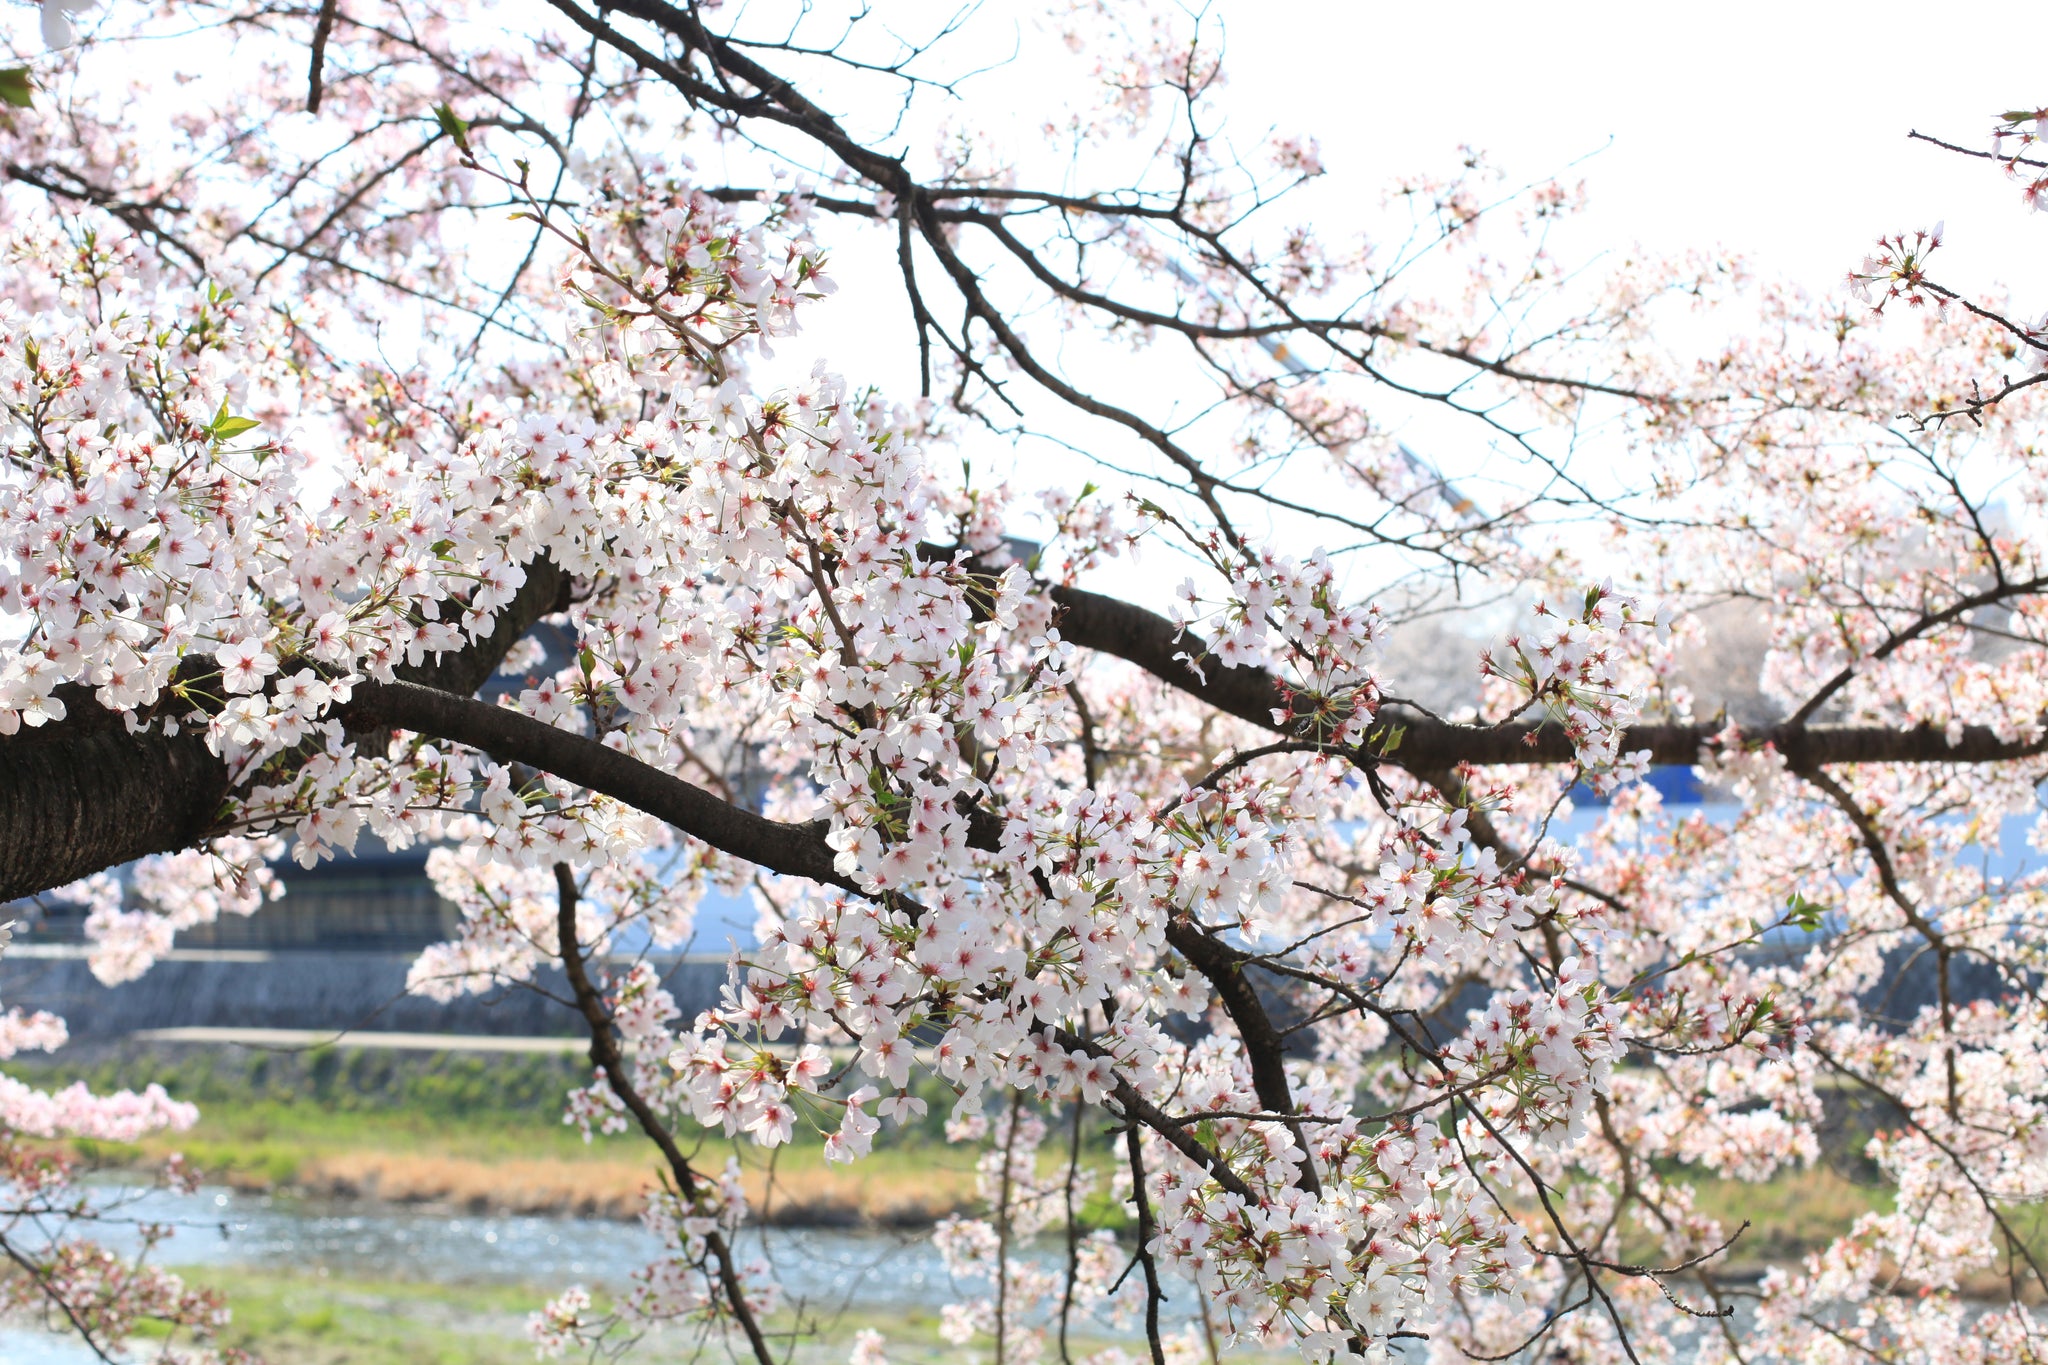 Stickers Fleurs Sakura - Fleurs de Cerisier - Décoration japonaise